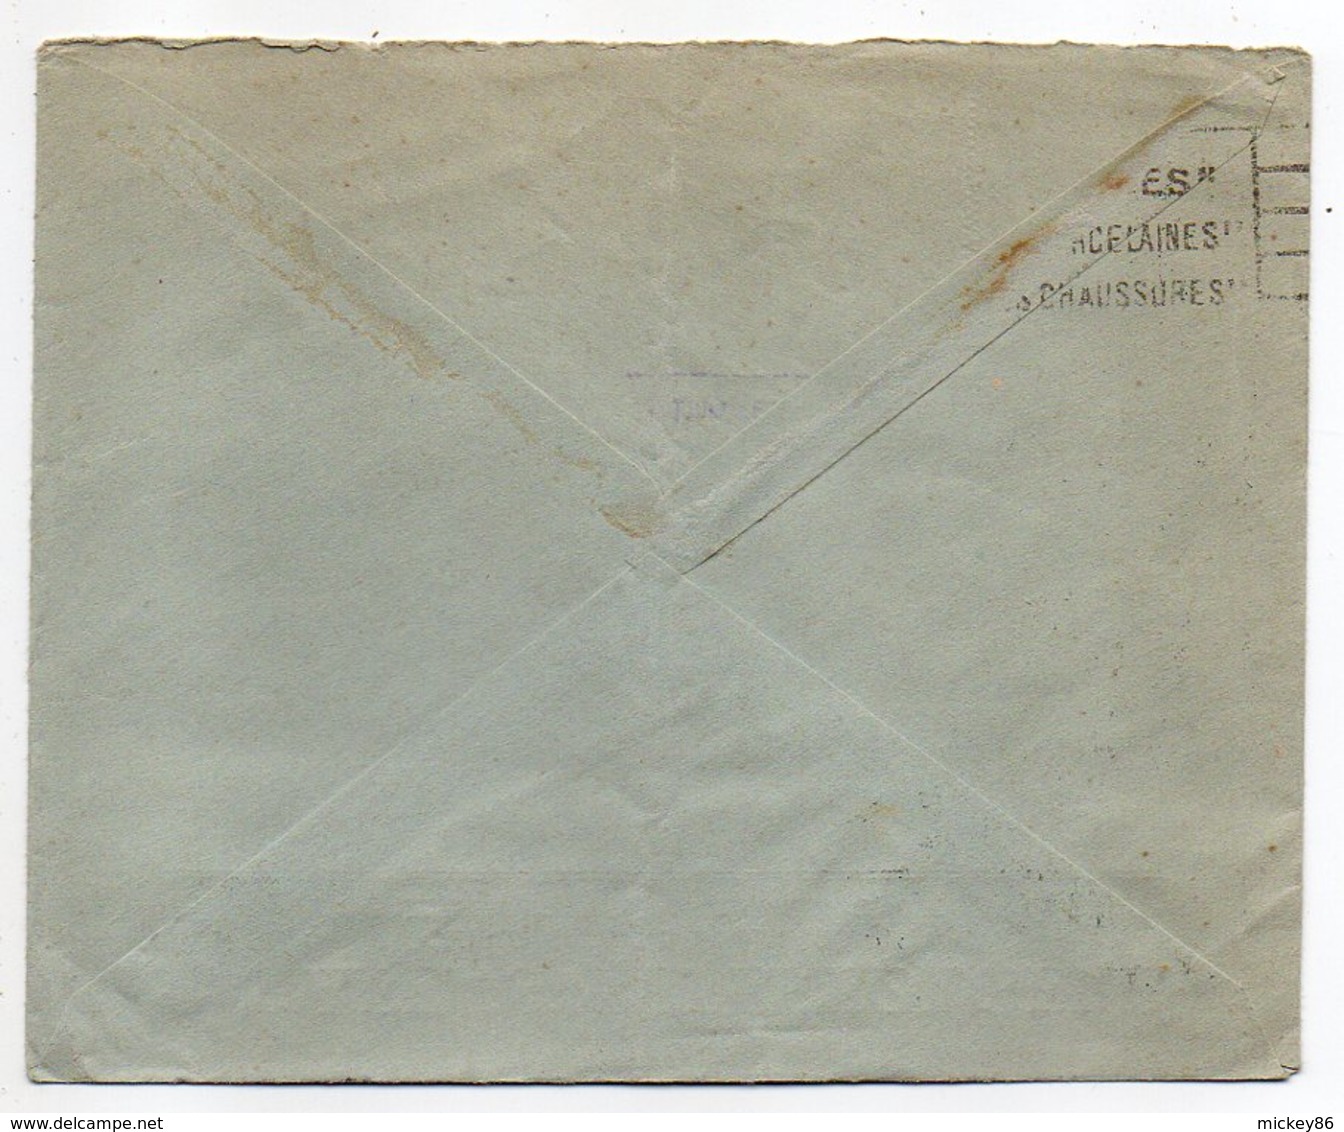 Norvège -1934 - Lettre De OSLO Pour LIMOGES(France)-timbres-cachet--a/s RAFENS EFTERFOLGERE - Covers & Documents